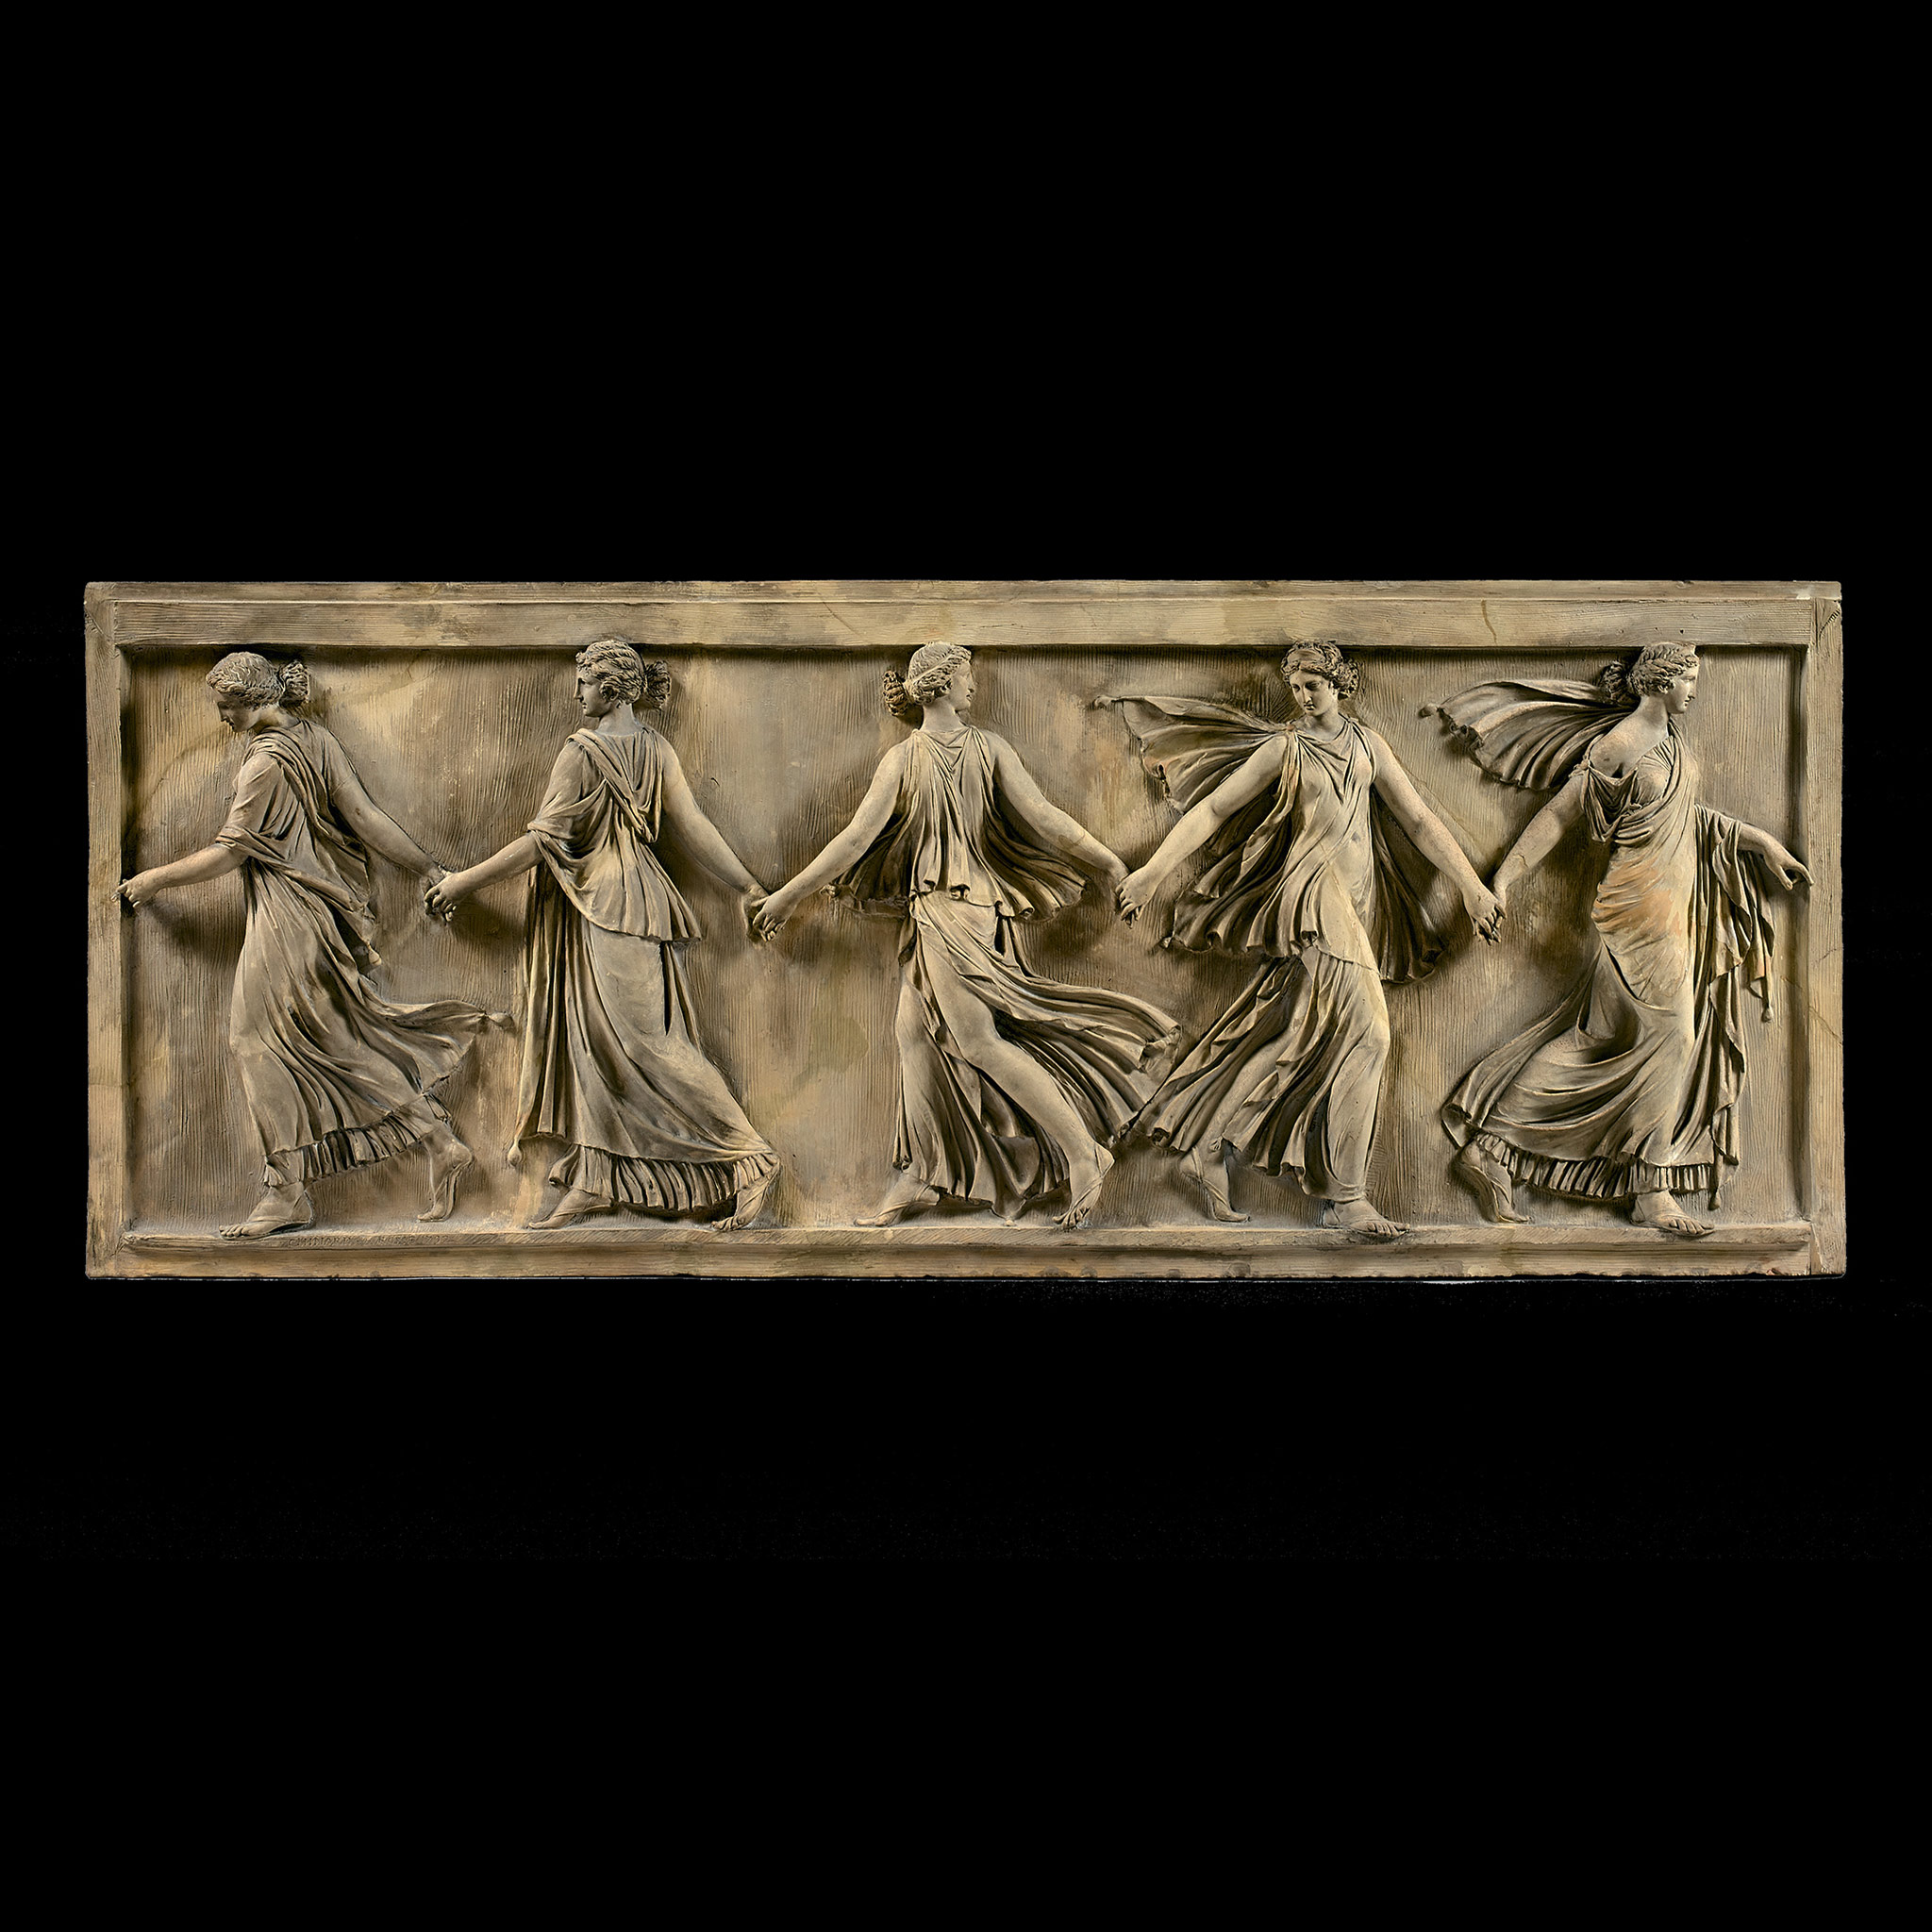 Joseph CHINARD (1756 - 1813) , Relief dit les Danseuses Borghèse, 1792, Terre cuite. D : 39,7 x 96,7 x 2 cm. Coll Privée.